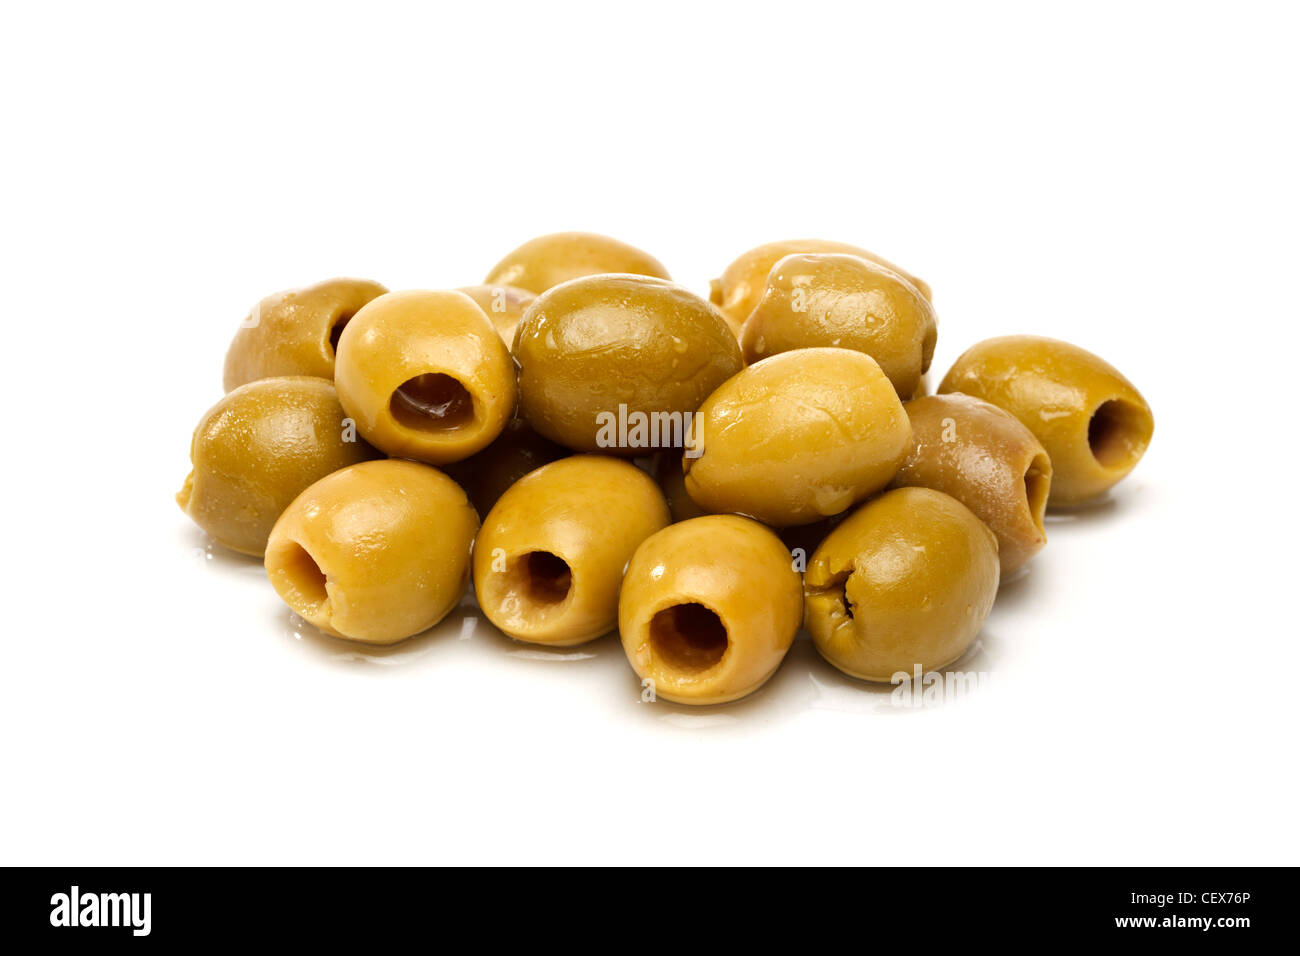 Olives on white background Stock Photo